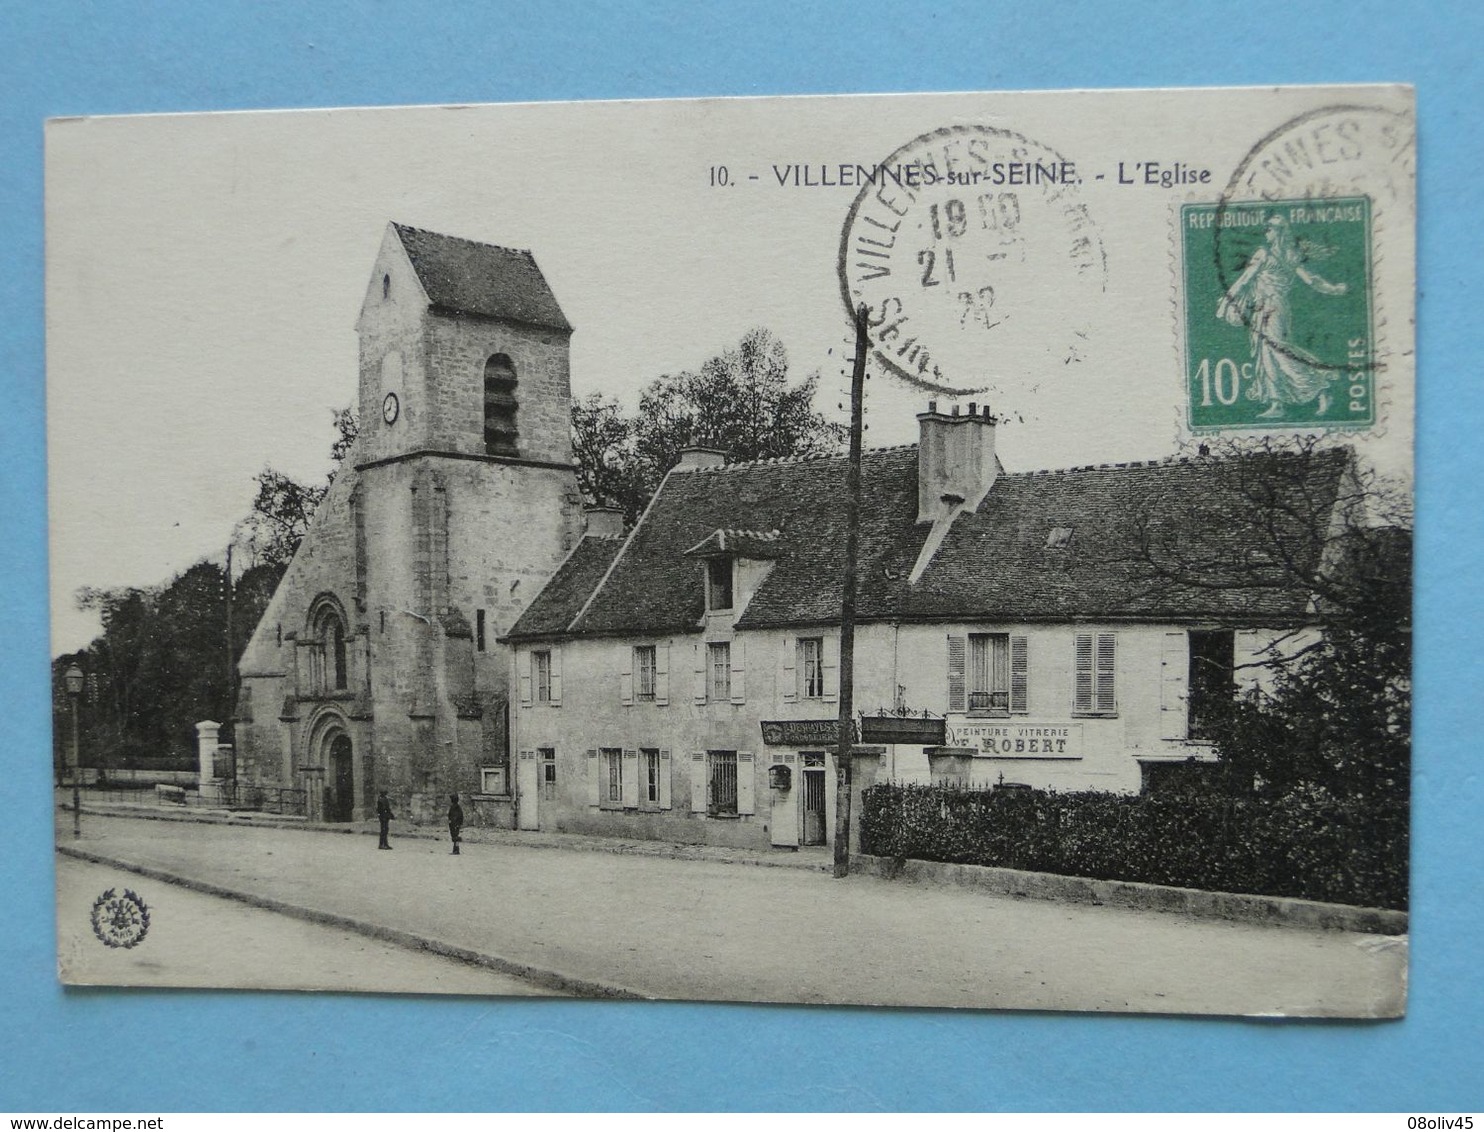 Joli lot de 20 Cartes Postales Anciennes FRANCE -- TOUTES ANIMEES - Voir les 20 scans - Lot N° 4